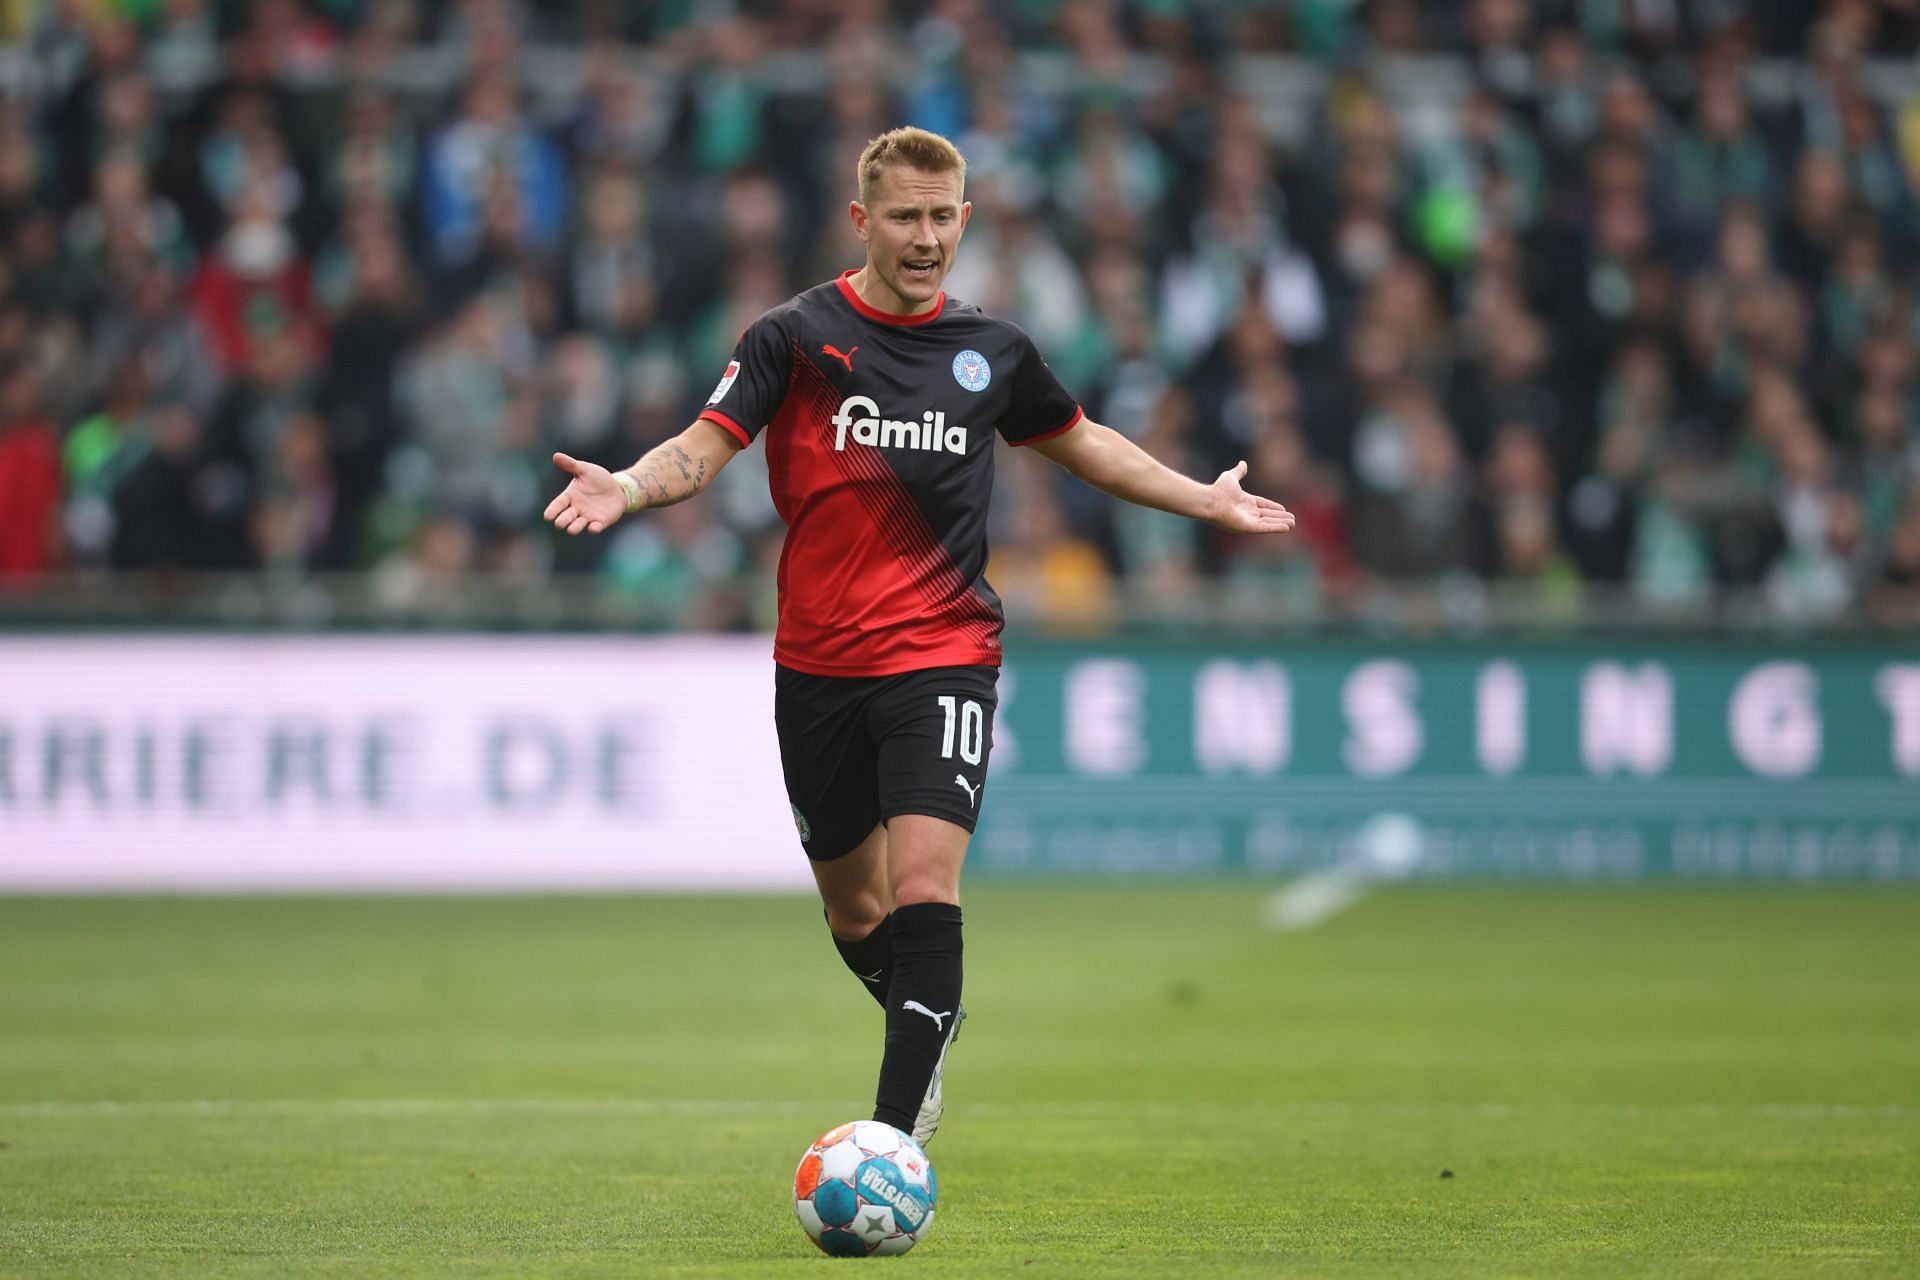 Holstein Kiel will face St Pauli on Saturday - Club Friendlies 2022